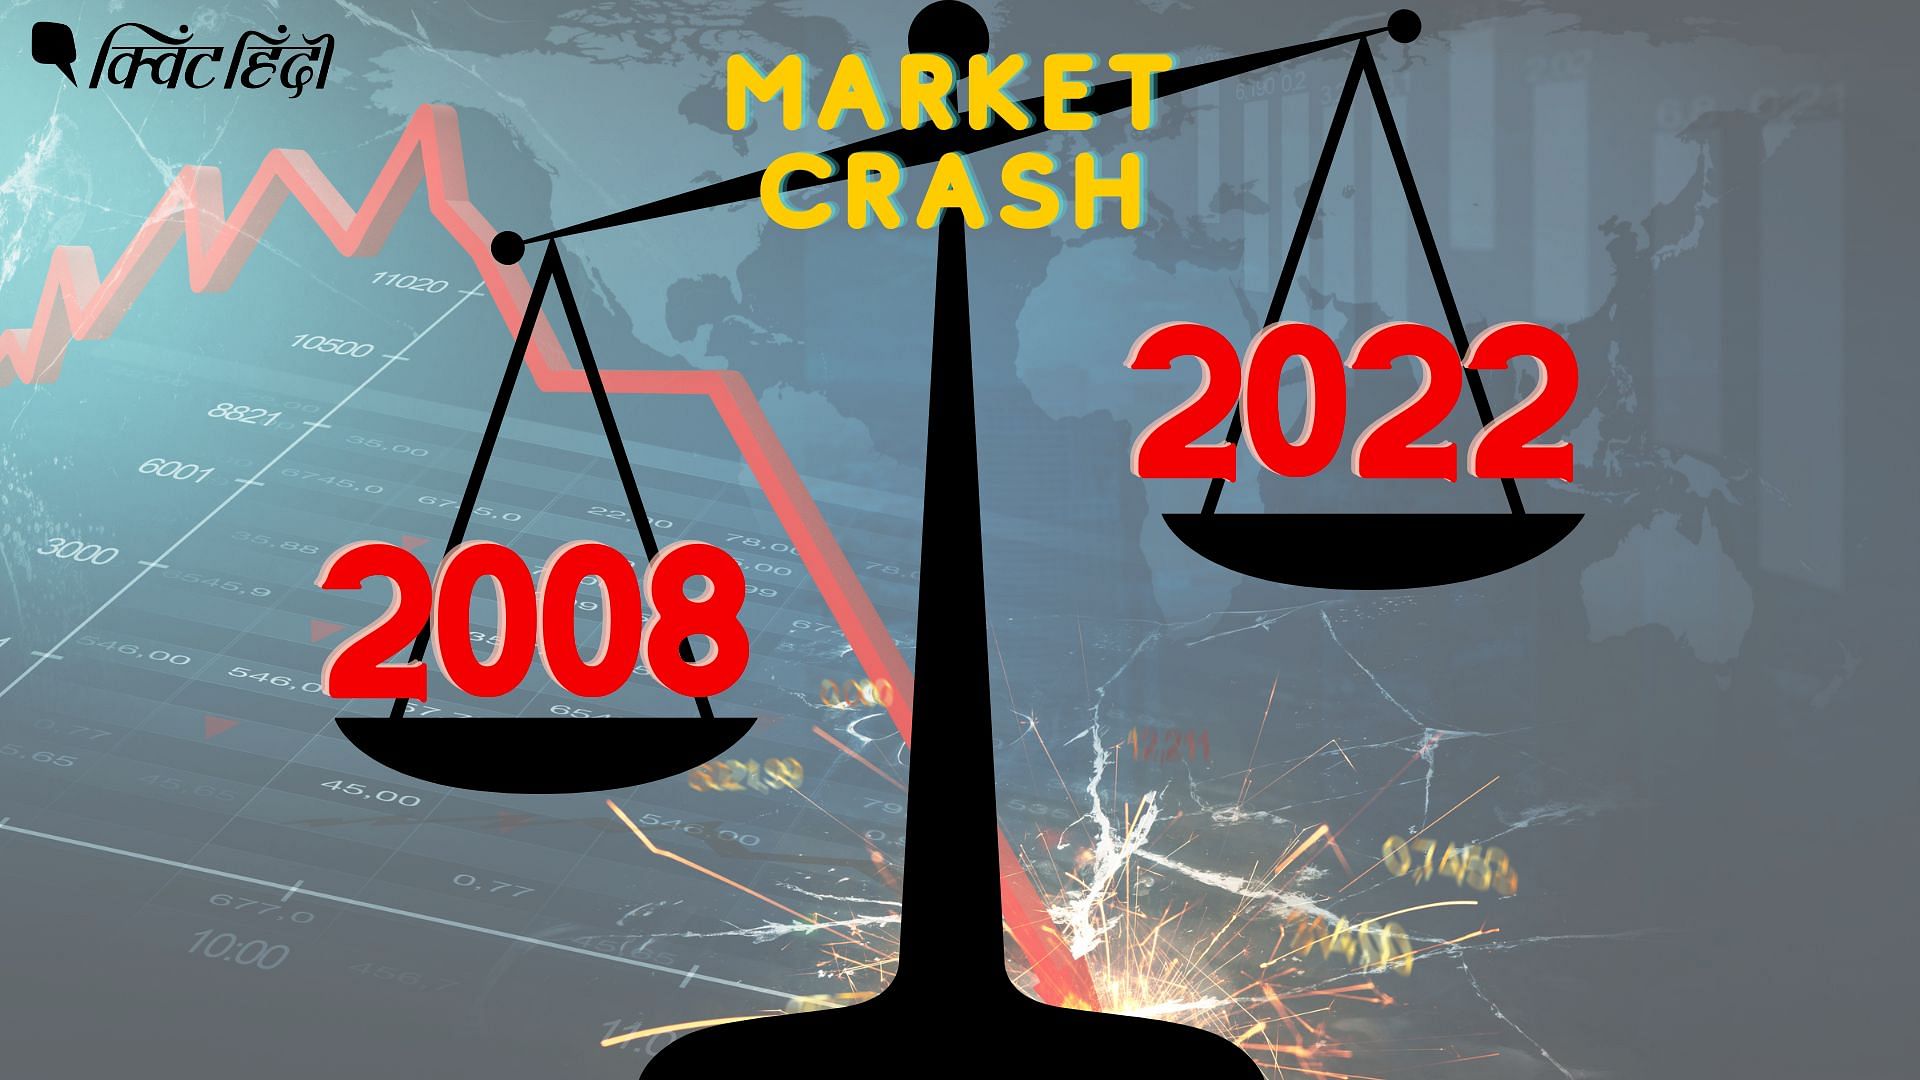 <div class="paragraphs"><p>Share Market Crash 2008 vs 2022</p></div>